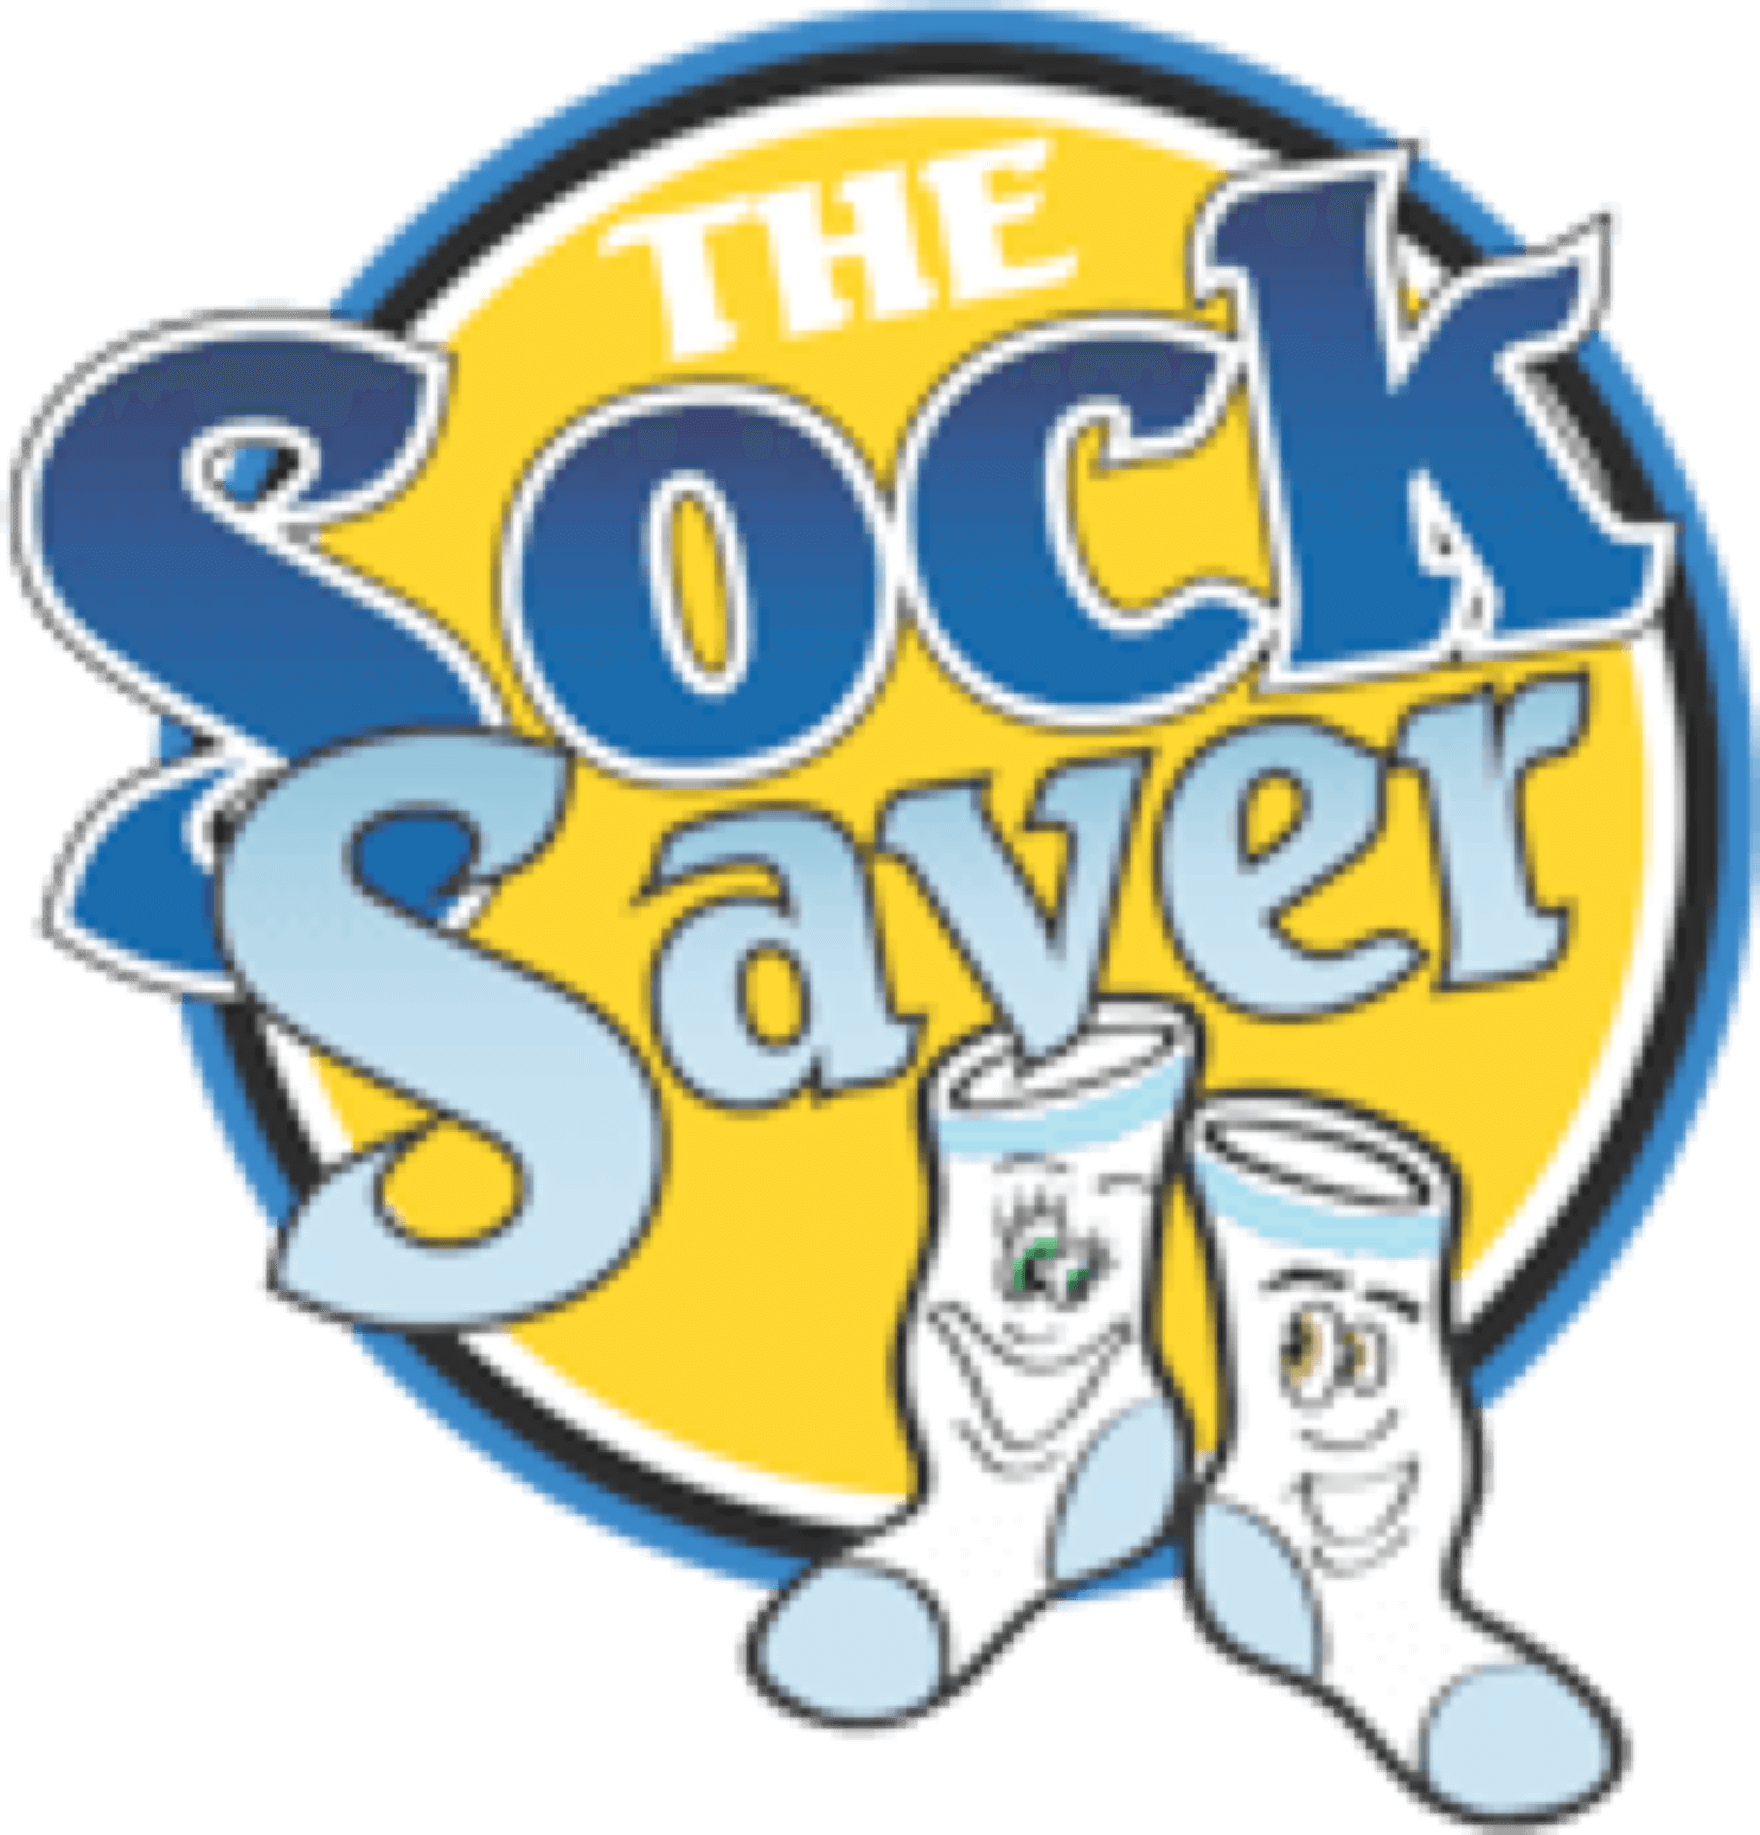 sock-saver-washable-laundry-bags-logo